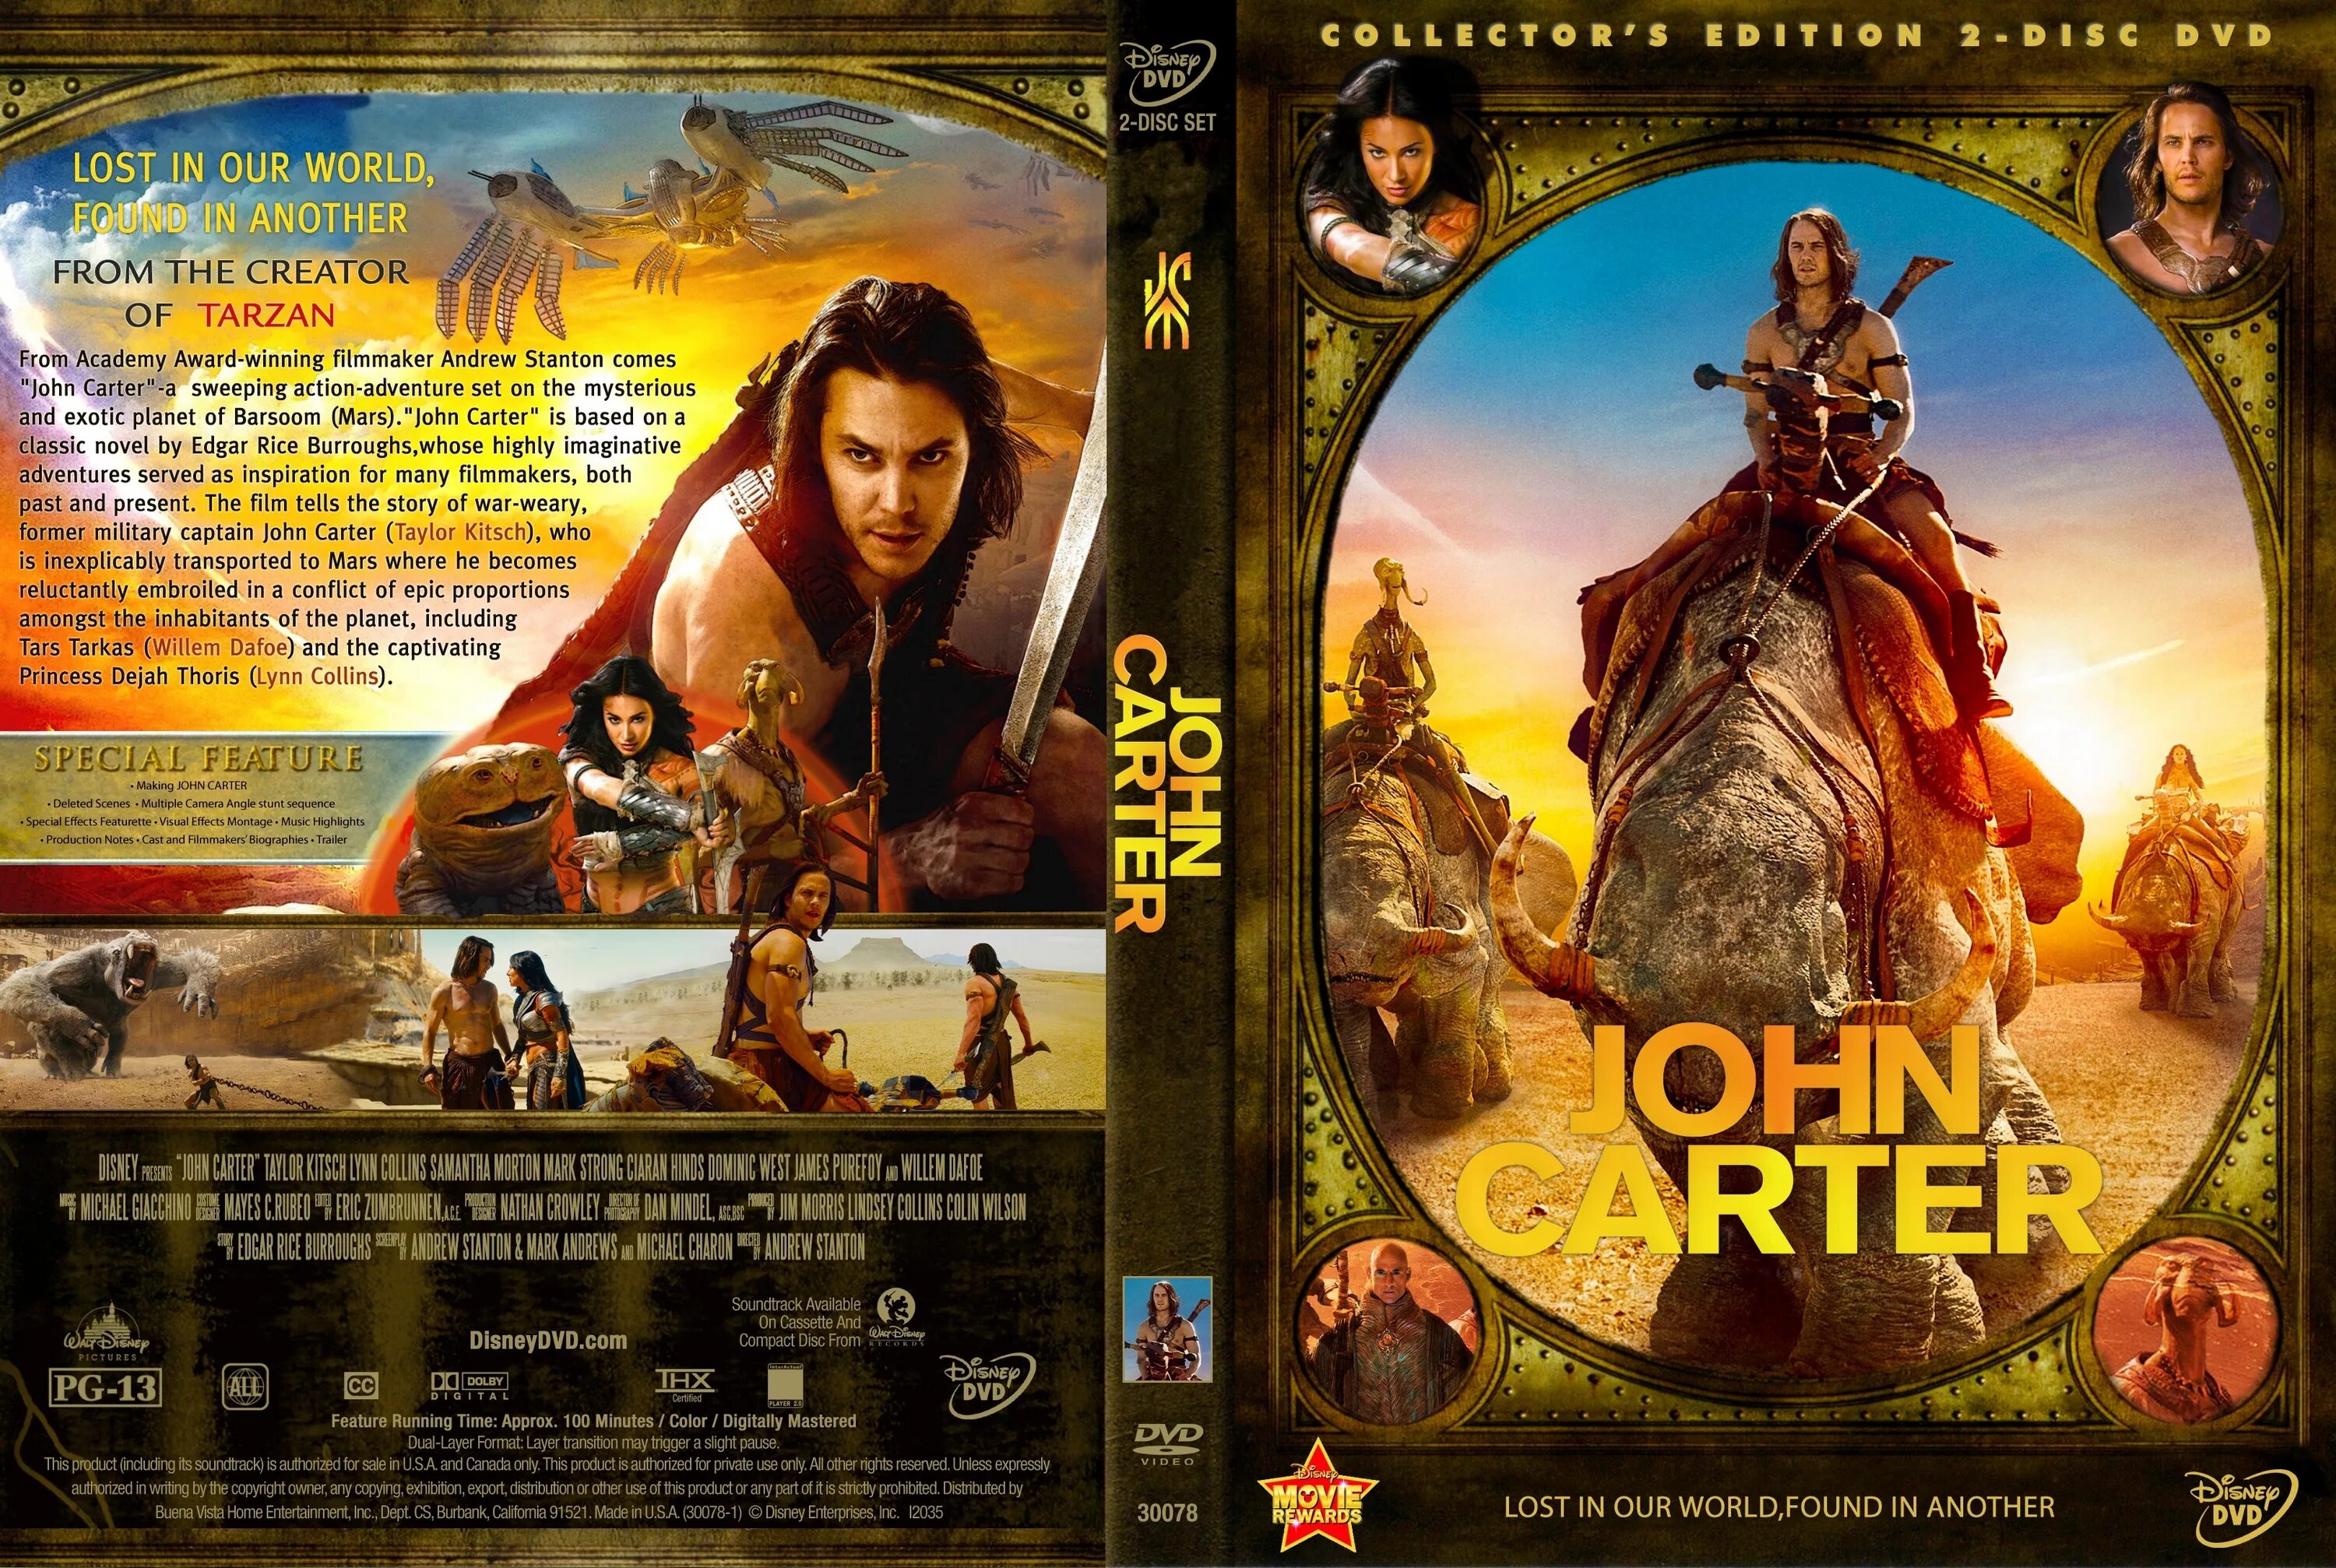 Джон Картер (2012) Blu ray Cover. Обложка для двд John Carter. Джон Картер 2012 Постер. Обложка к двд Джон Картер. 2012 обложка